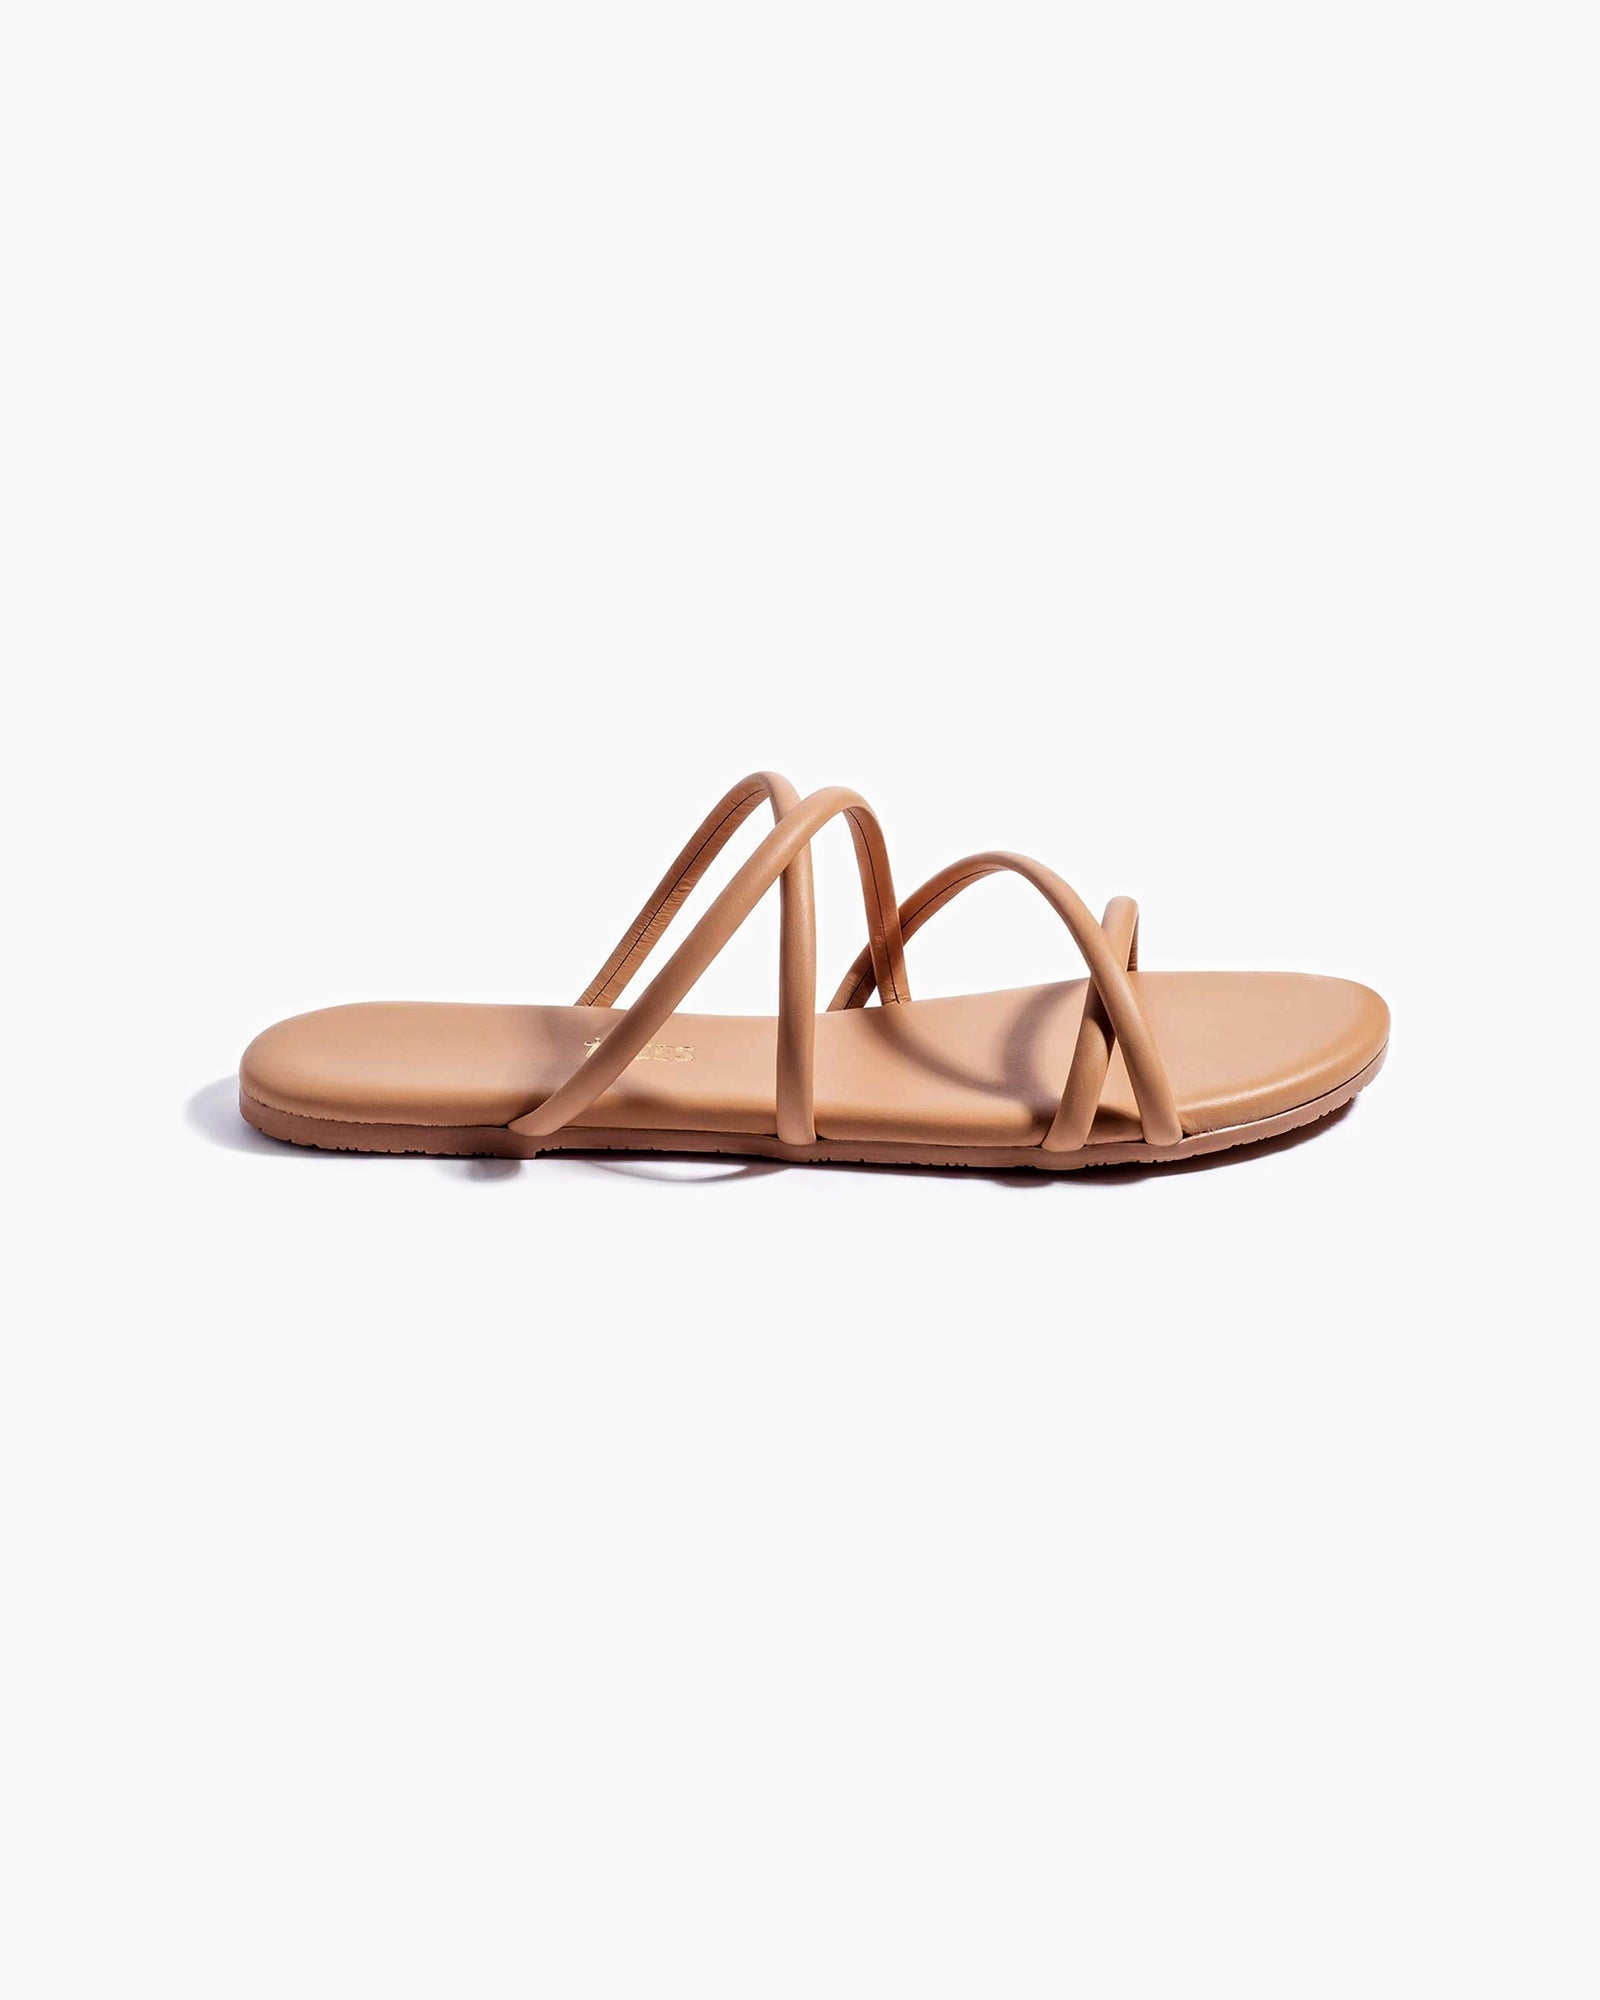 Sloane in Pout | Sandals | Women's Footwear – TKEES